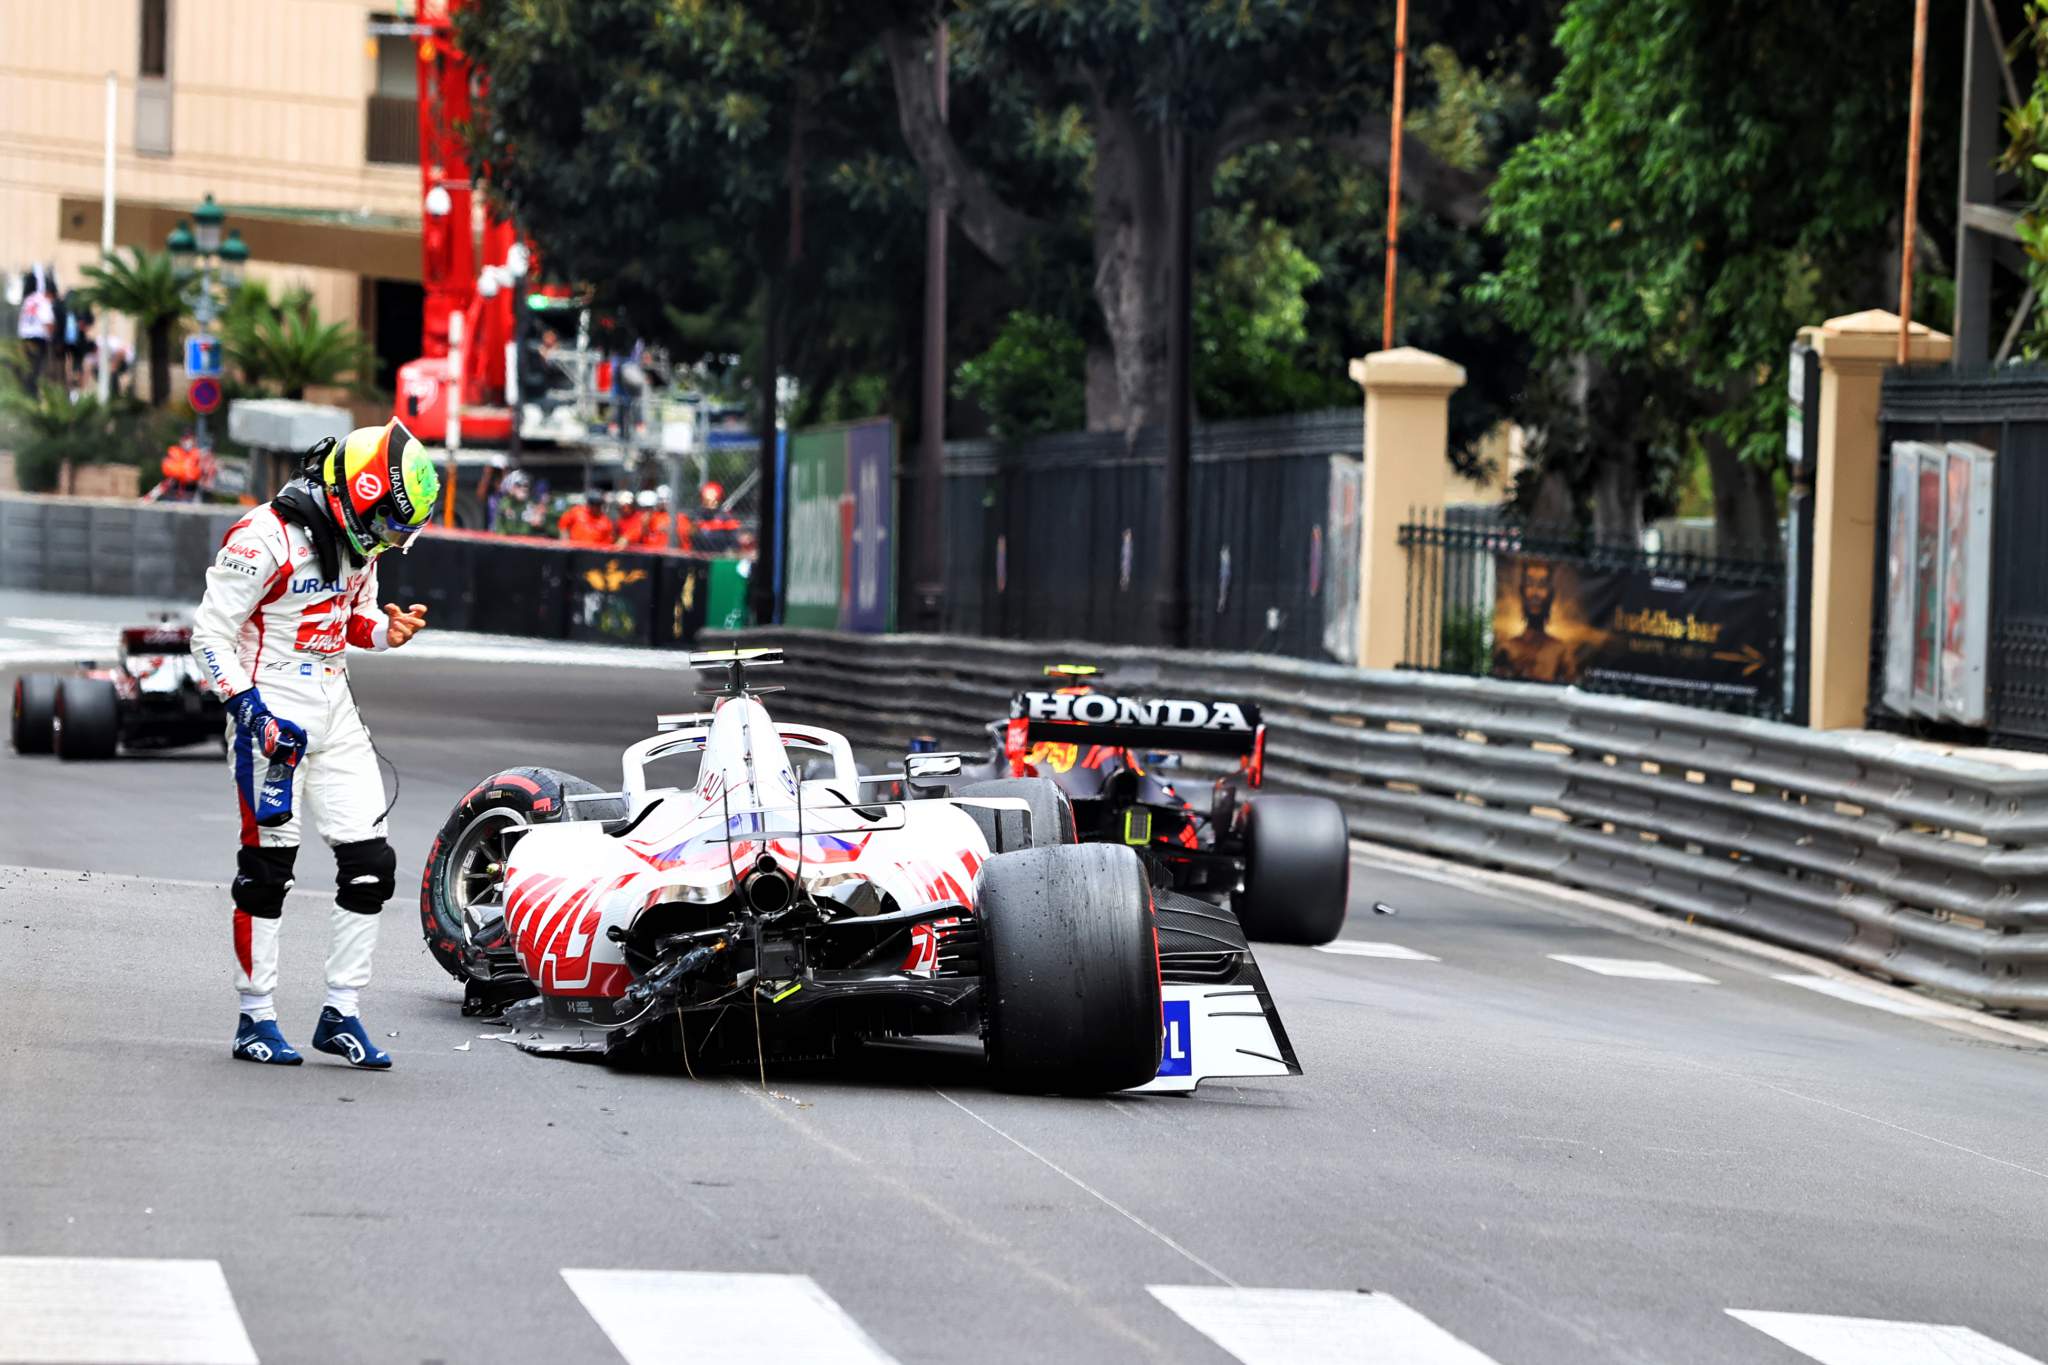 Mick Schumacher Haas Monaco Grand Prix practice crash 2021